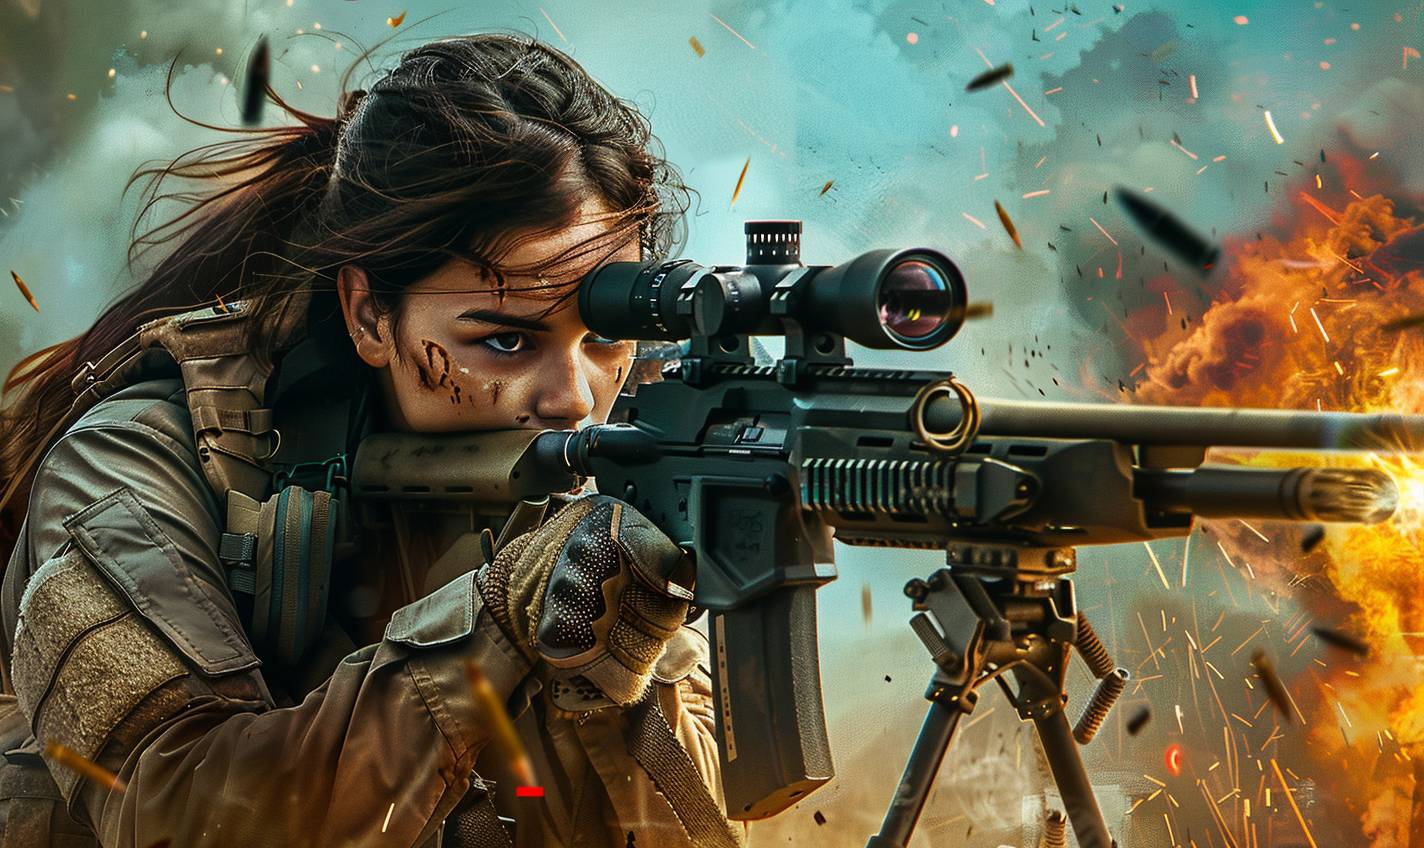 狙撃銃を持った戦術服を着用したブルネットの女性キャラクター。非常に詳細な全身アクションショット。ミカエル・ベイの映画ポスターのようです。ハイコントラスト、ダイナミックな構図、アクションポーズ、戦地がバックグラウンドに映っている、シネマティックでハイパーリアルな、シャープなフォーカス、鮮明なディテール